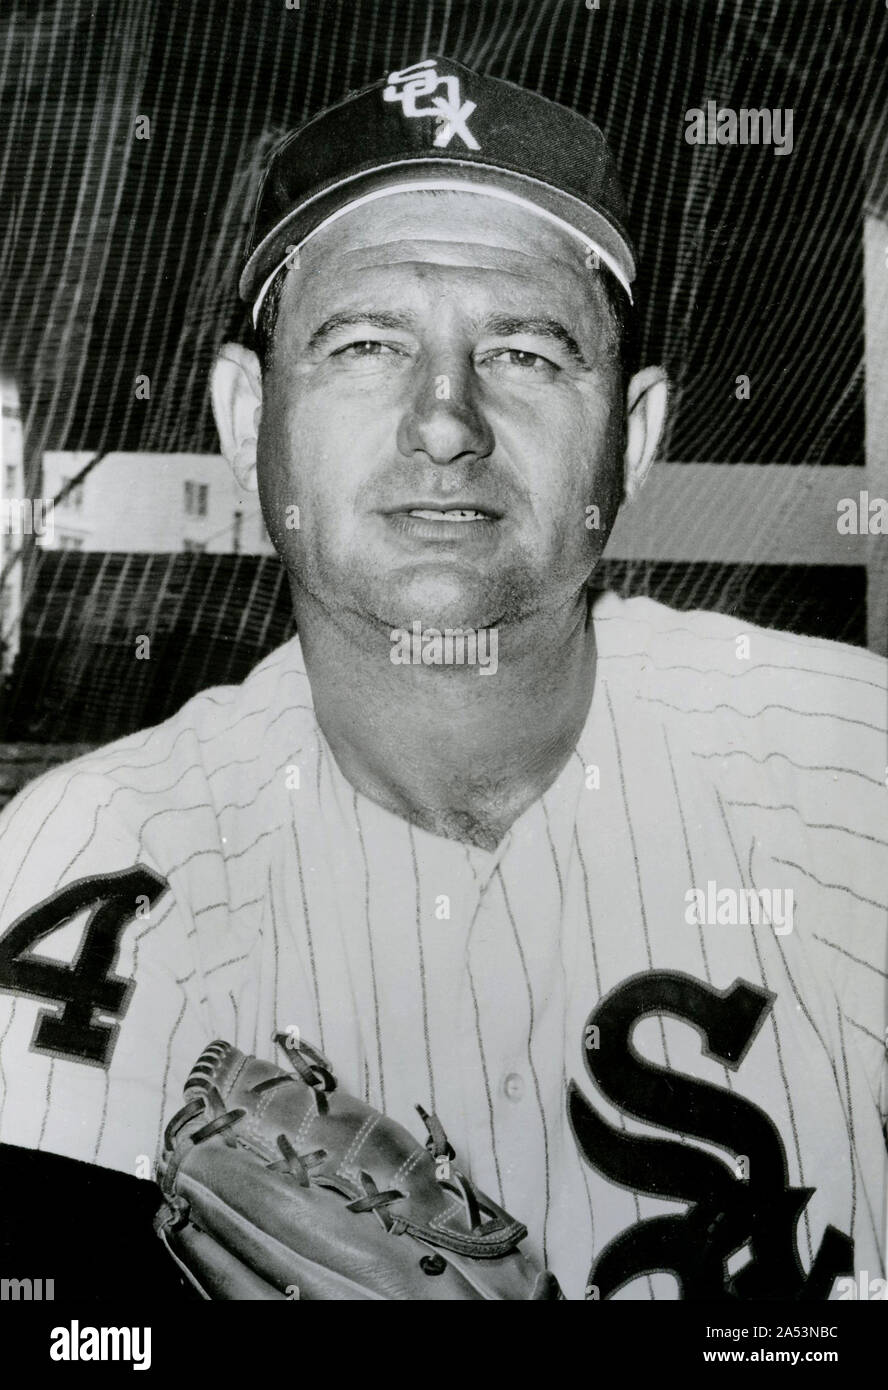 Vintage schwarz-weiß Foto von Hall of Fame Baseball spieler Früh Wynn, die in den 1950er Jahren gespielt und 60er. Stockfoto